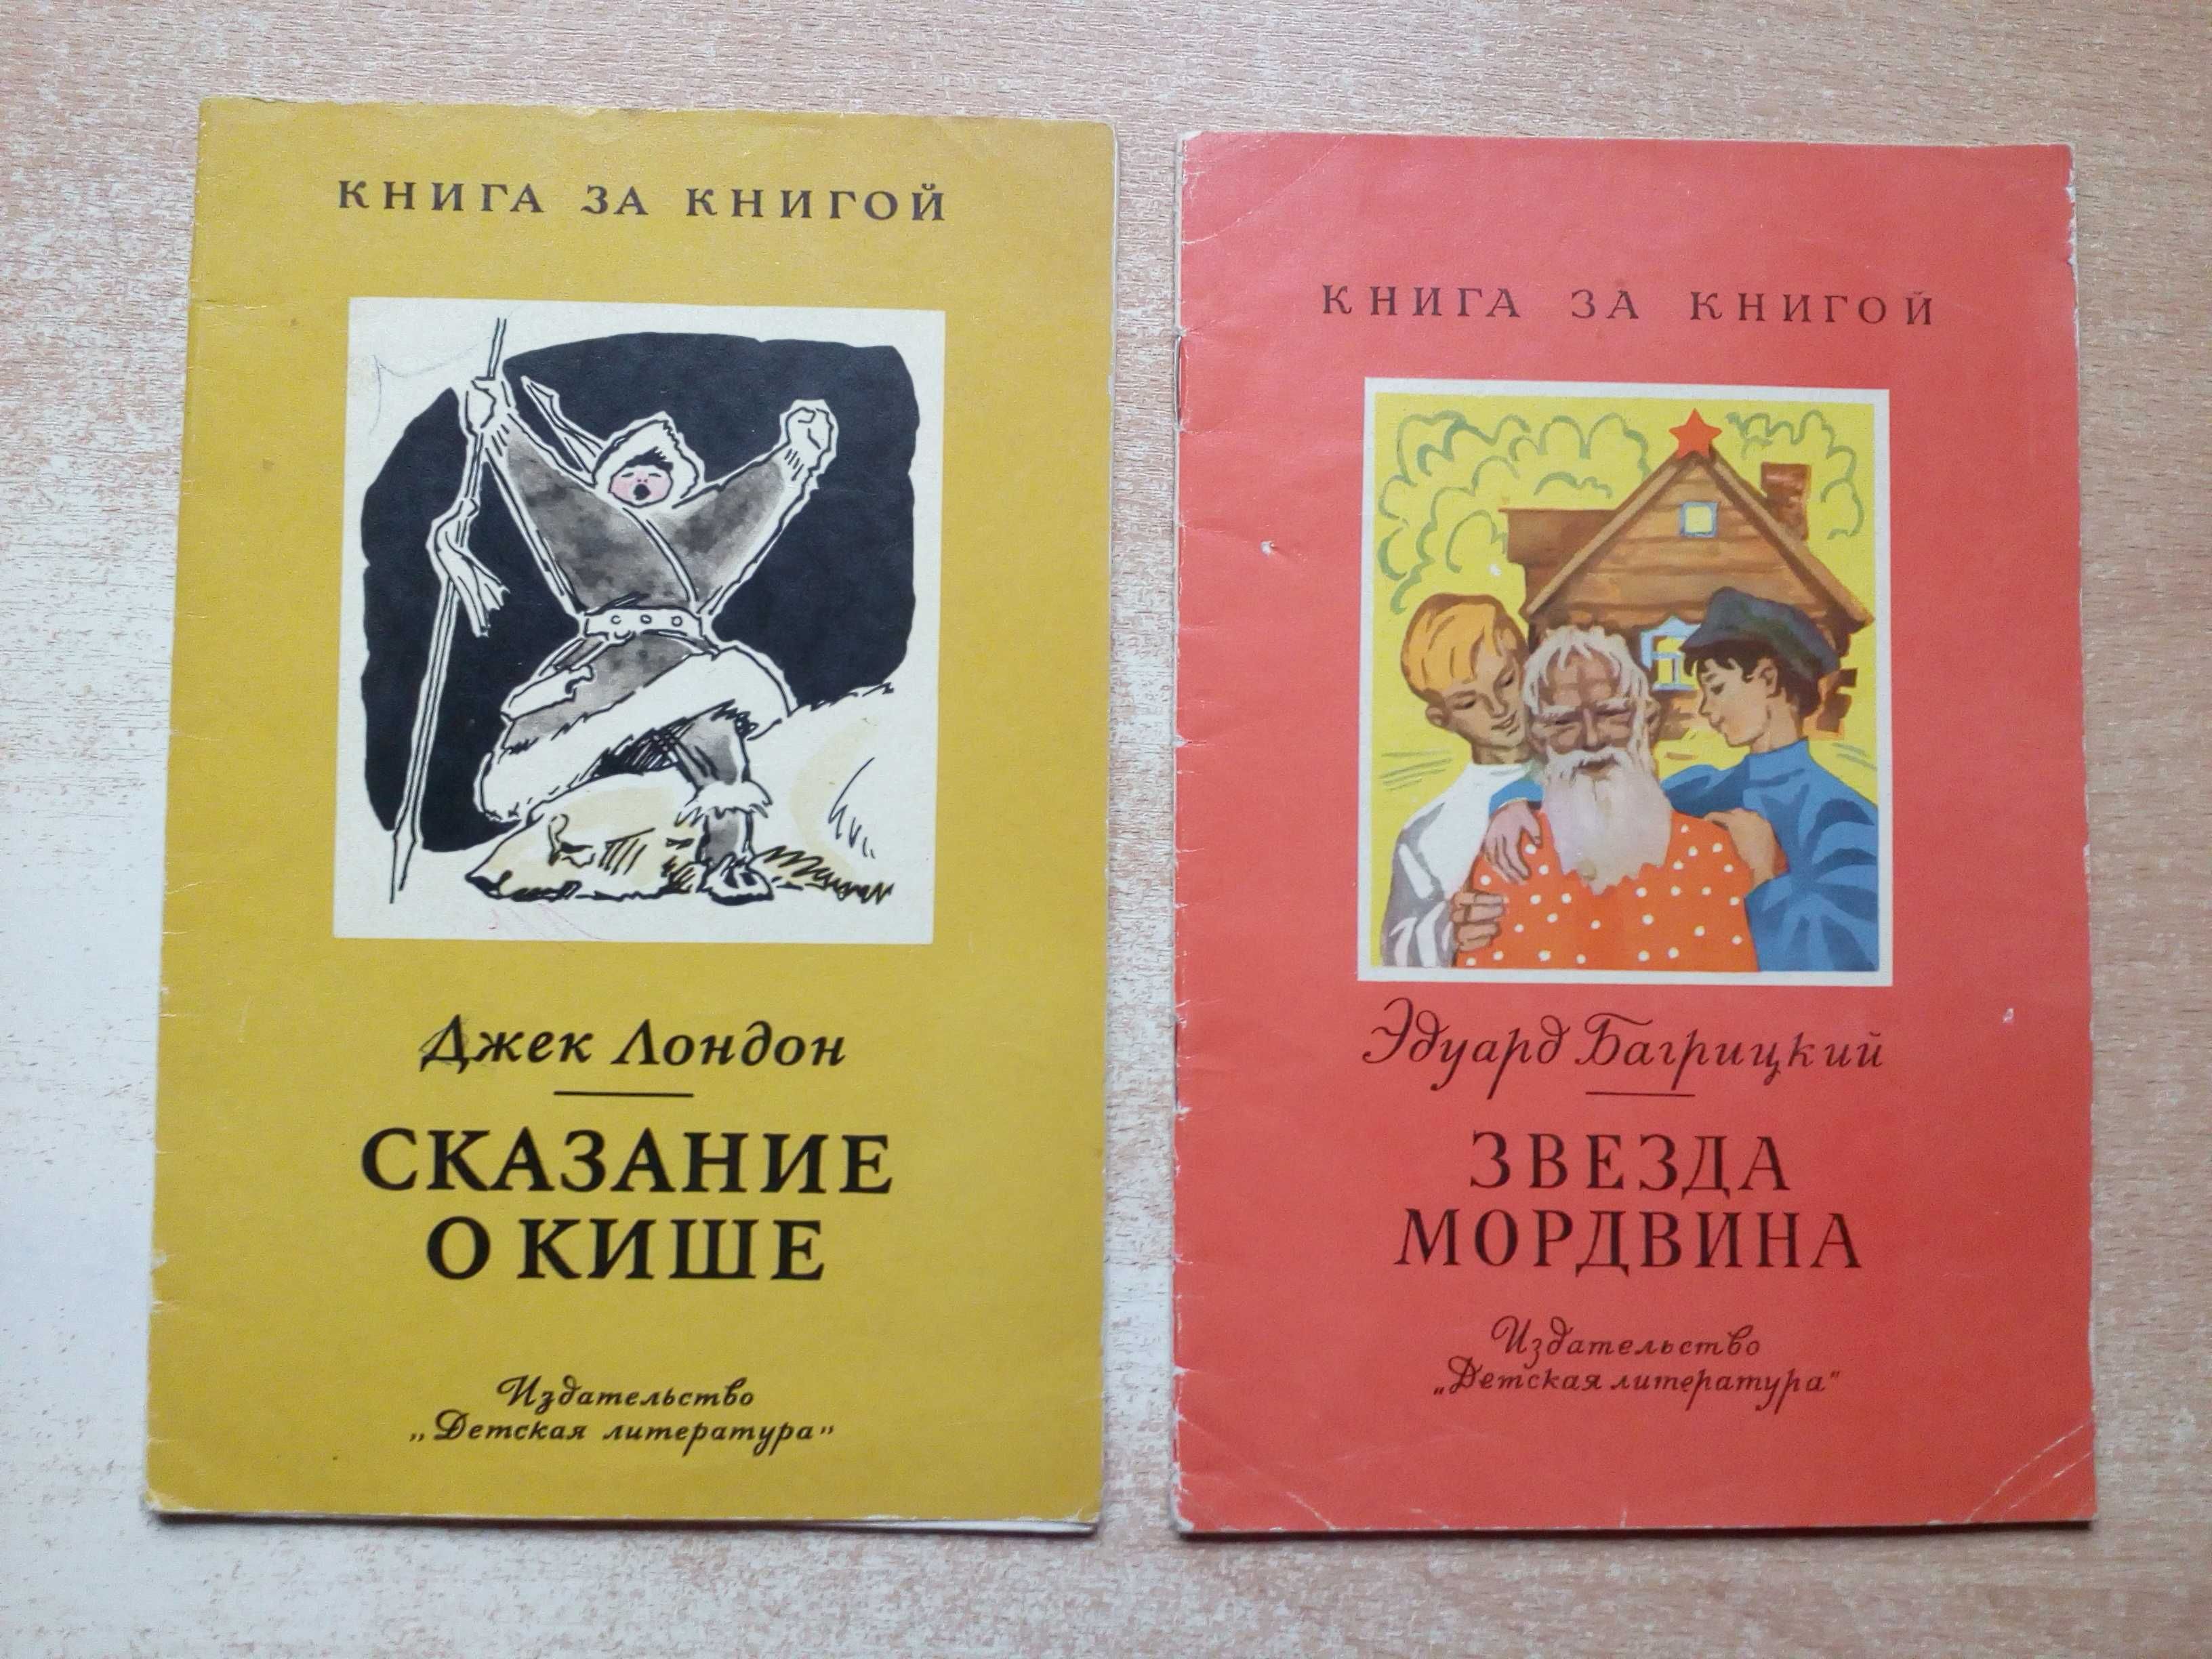 Книги для детей издательства"Детская Литература".